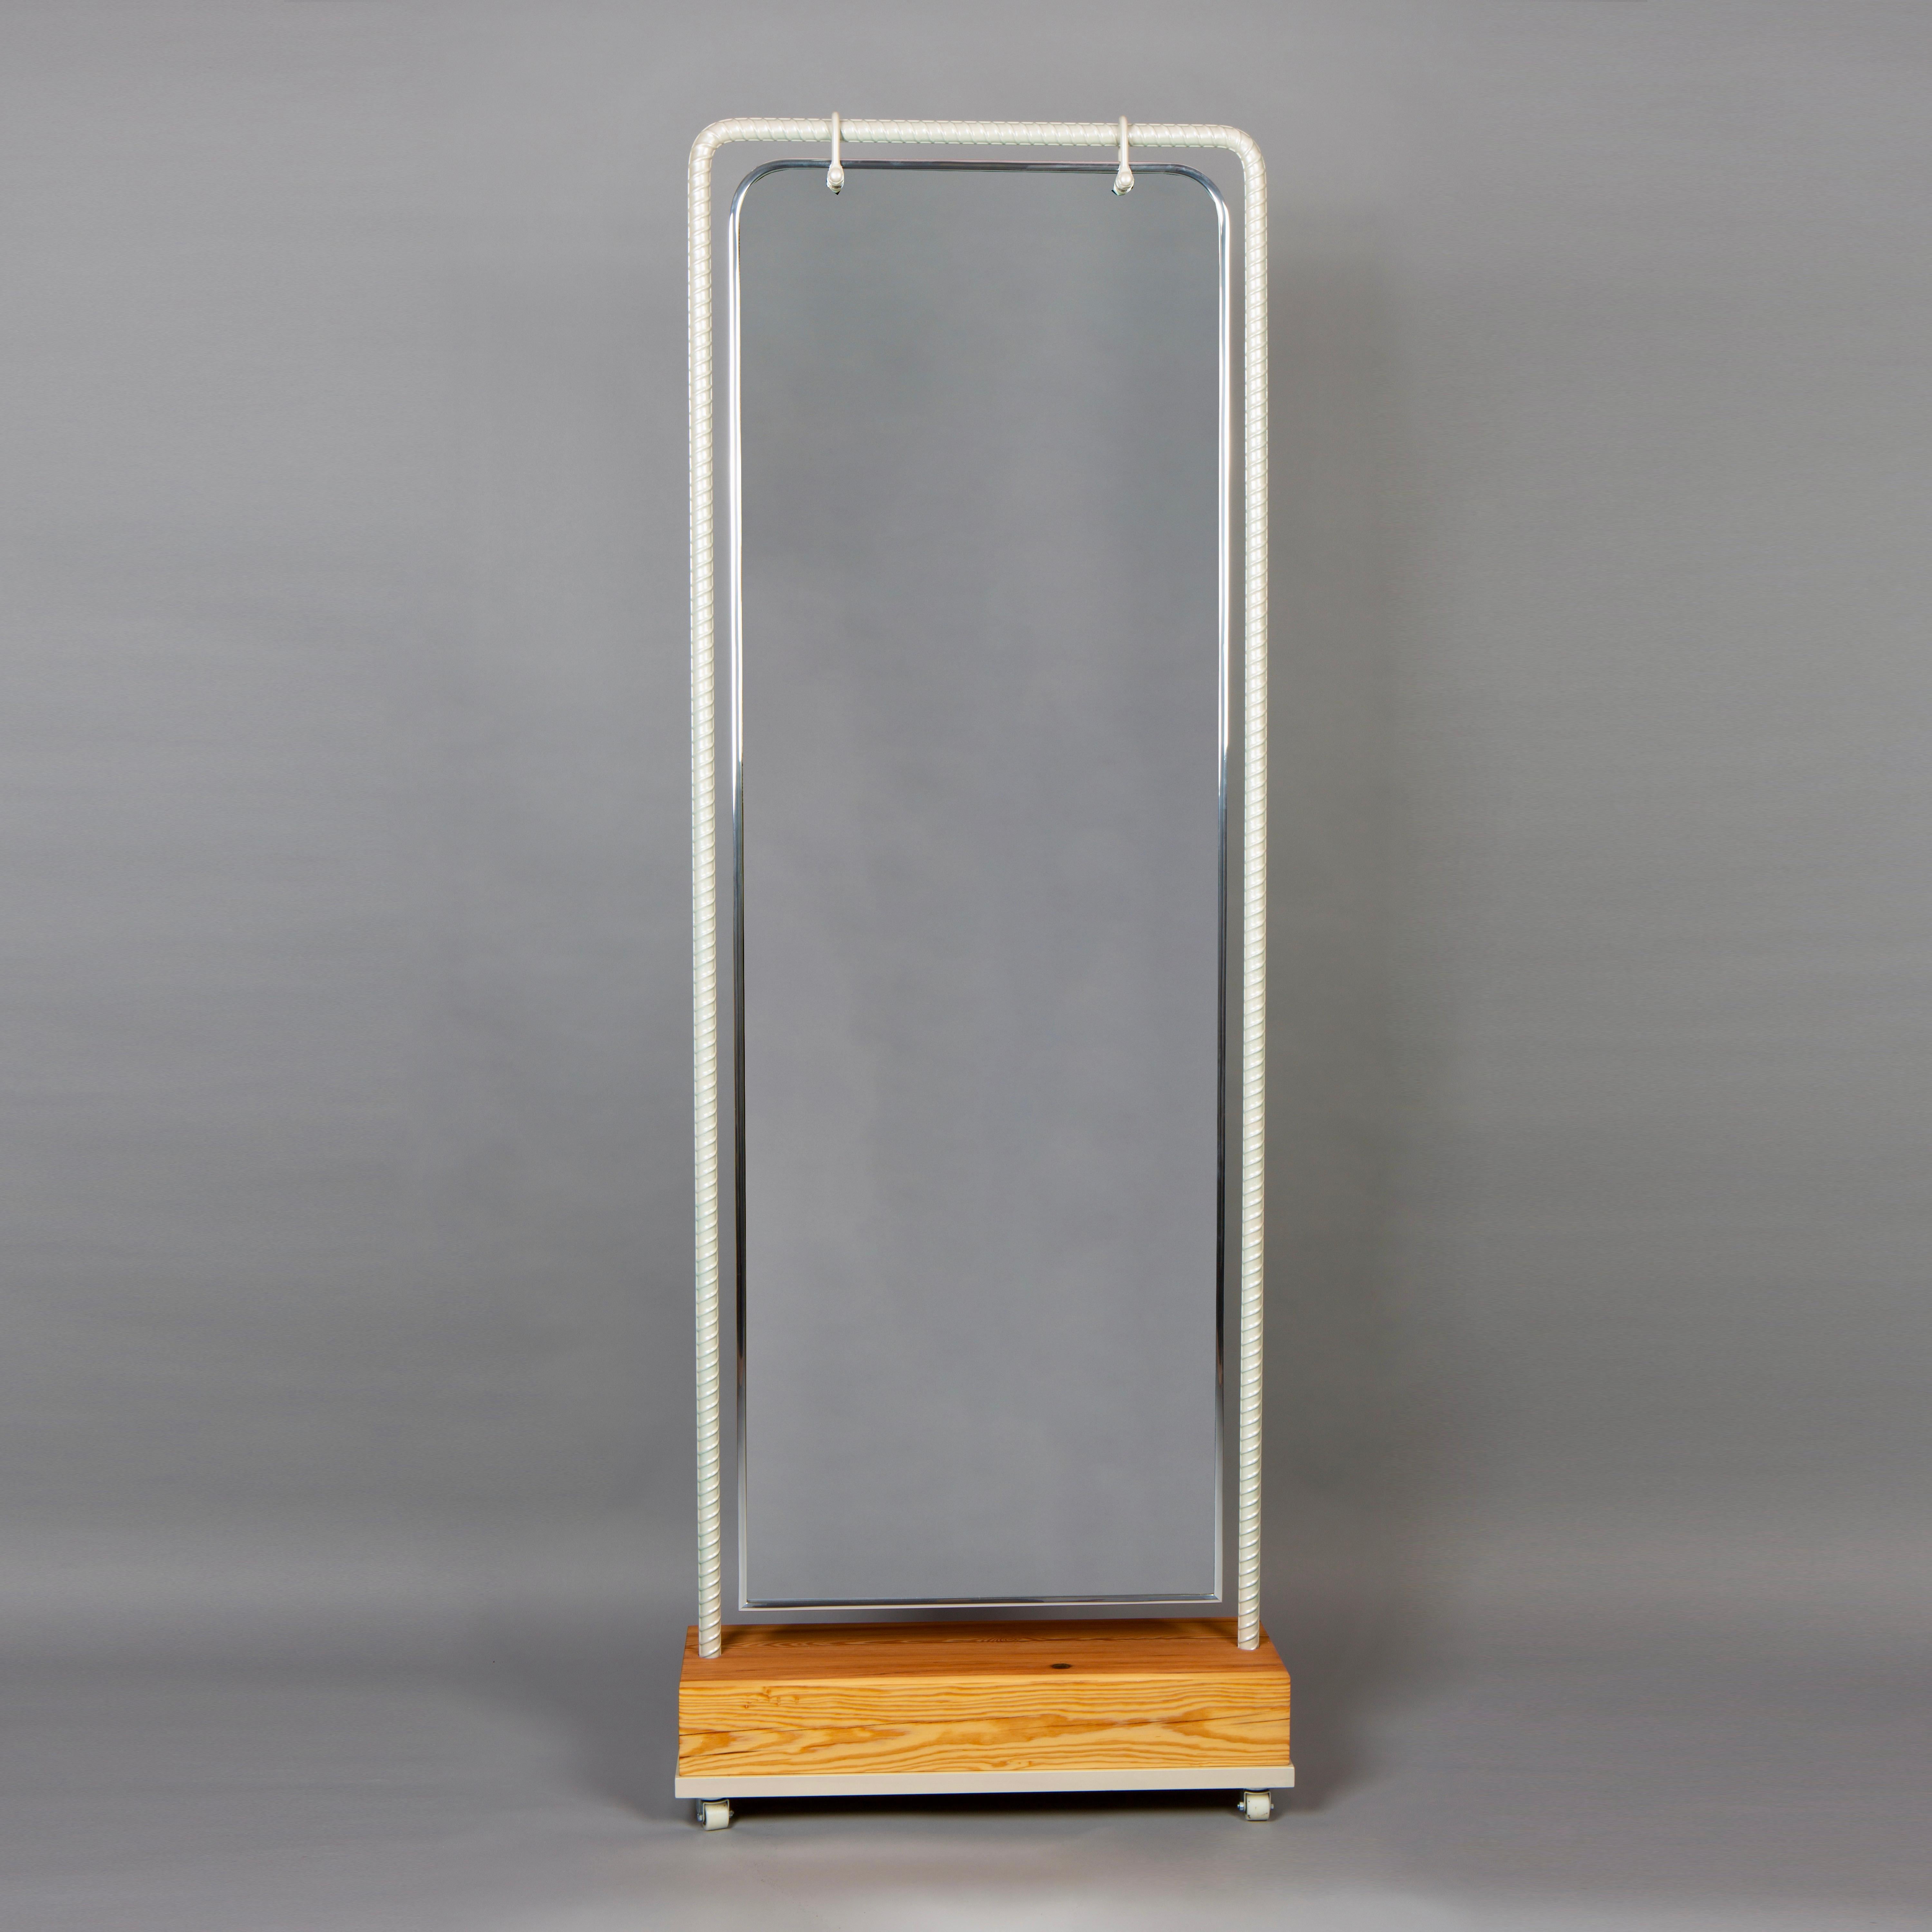 Der Nefertiti Dressing Mirror ist Teil der Rebar-Serie von Troy Smith.  Der Bewehrungsstahl ist der Stahl, der zum Formen des Betons verwendet wird, um ihm Festigkeit zu verleihen. Bewehrungsstahl wird mit Acetylenbrennern und glühenden Schmieden